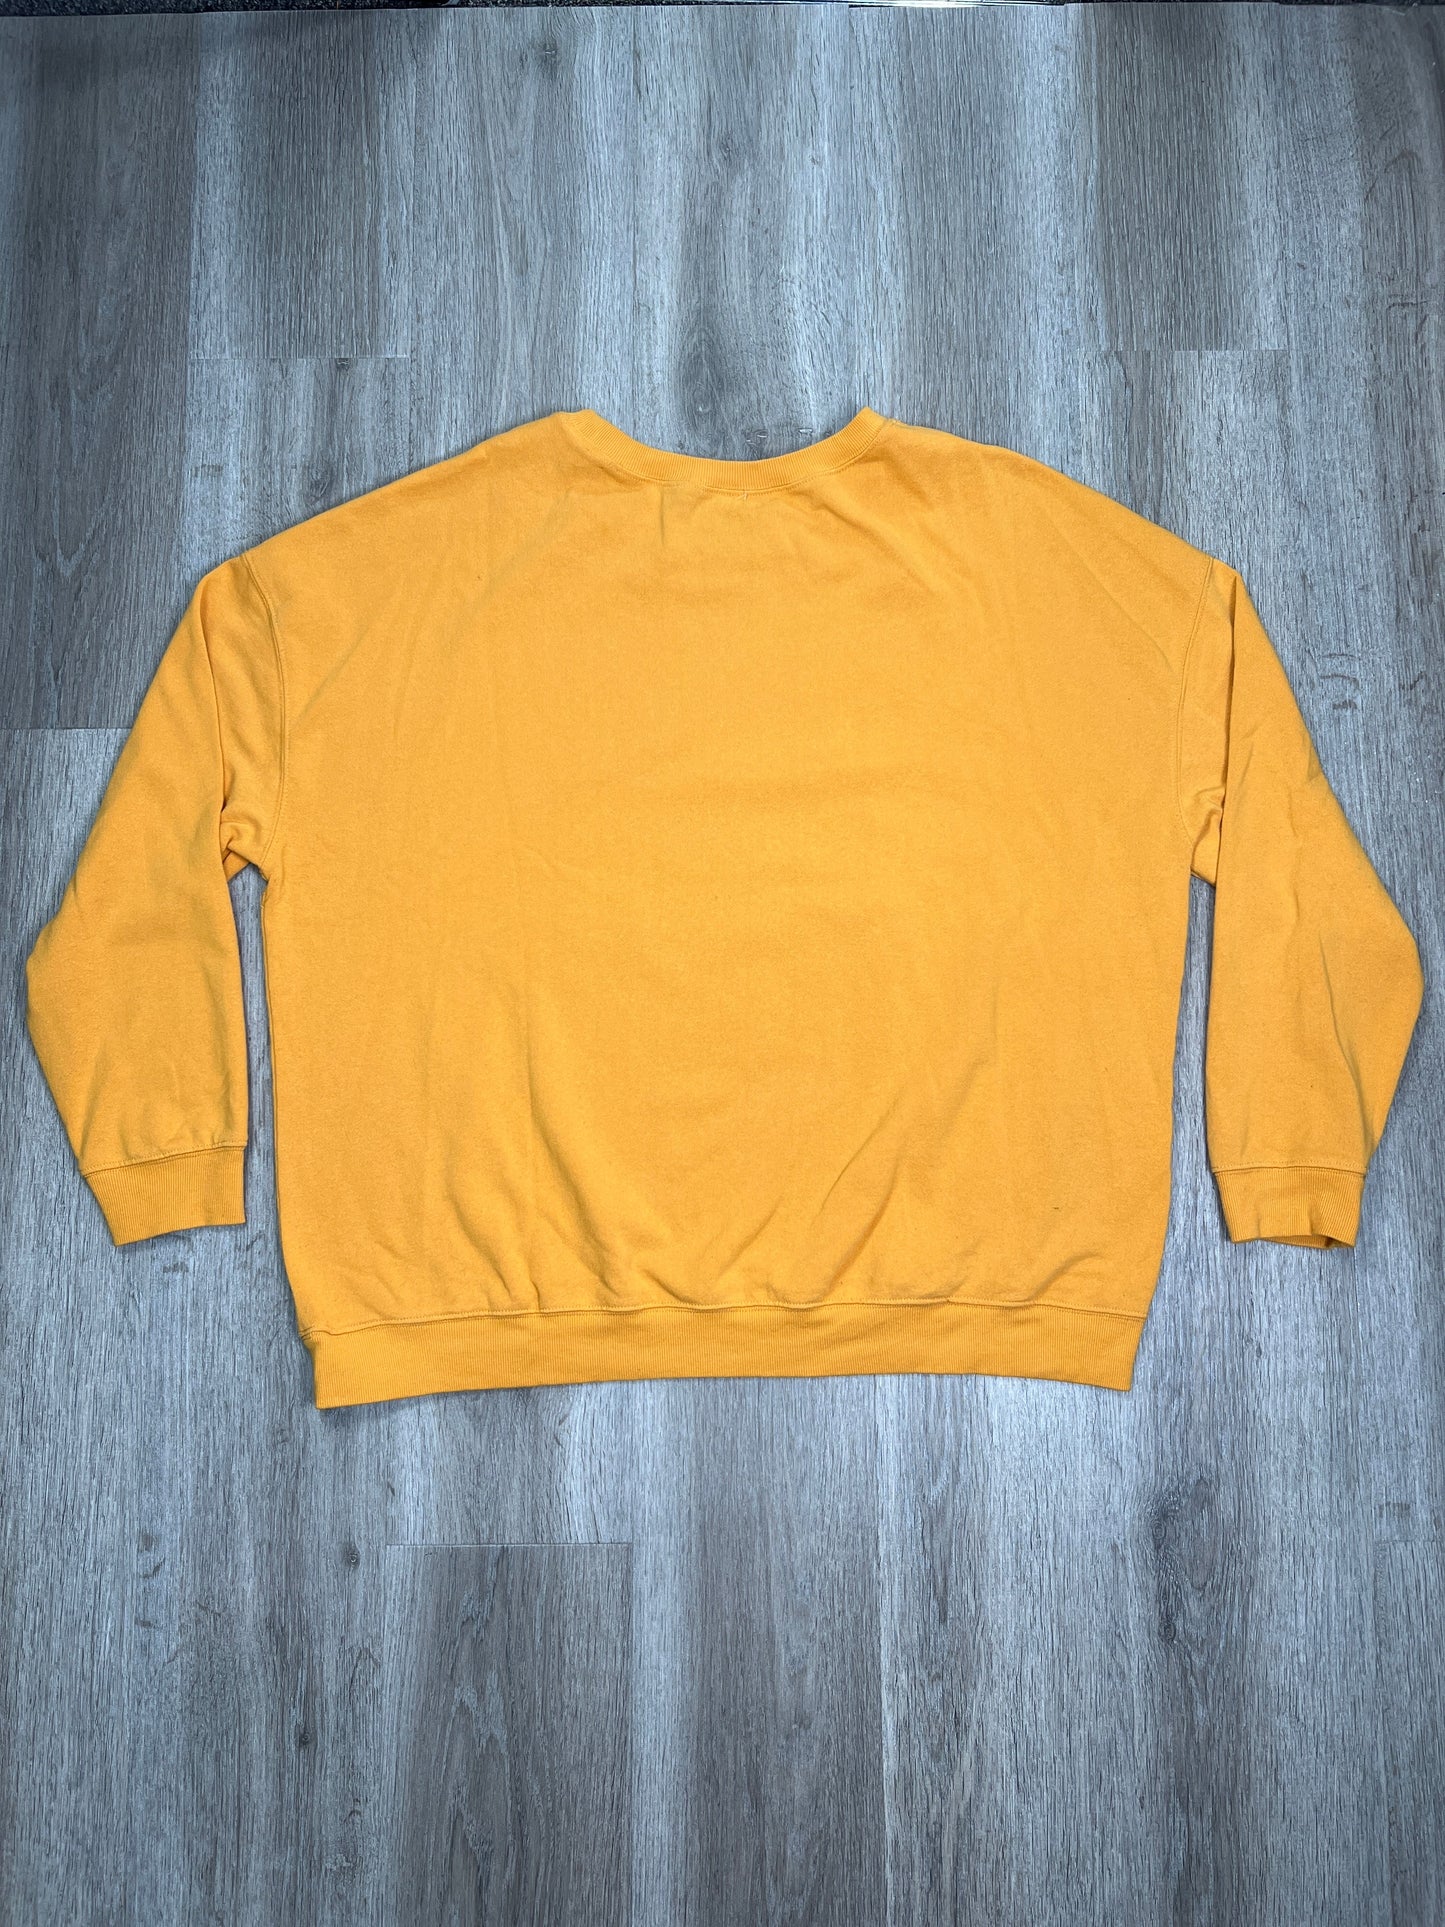 Yellow Sweatshirt Crewneck Halloween II, Size 3x